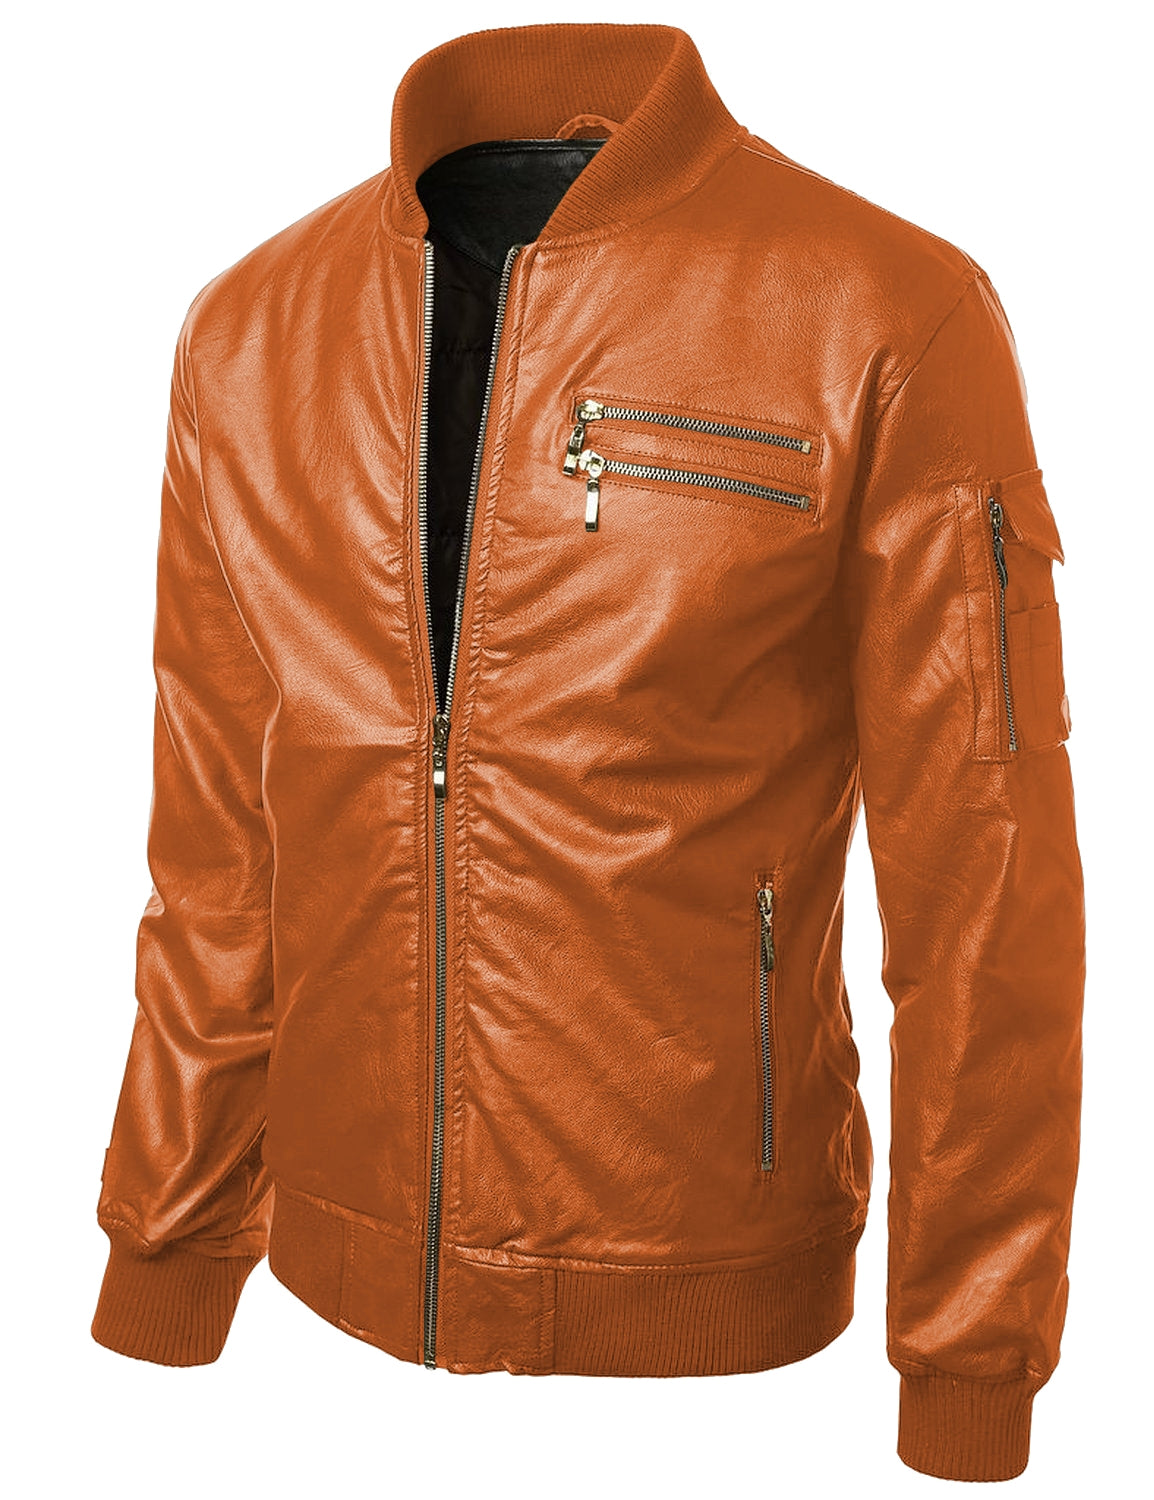 Leather Jackets Hub Mens Genuine Lambskin Leather Jacket (Black, Bomber Jacket) - 1501286